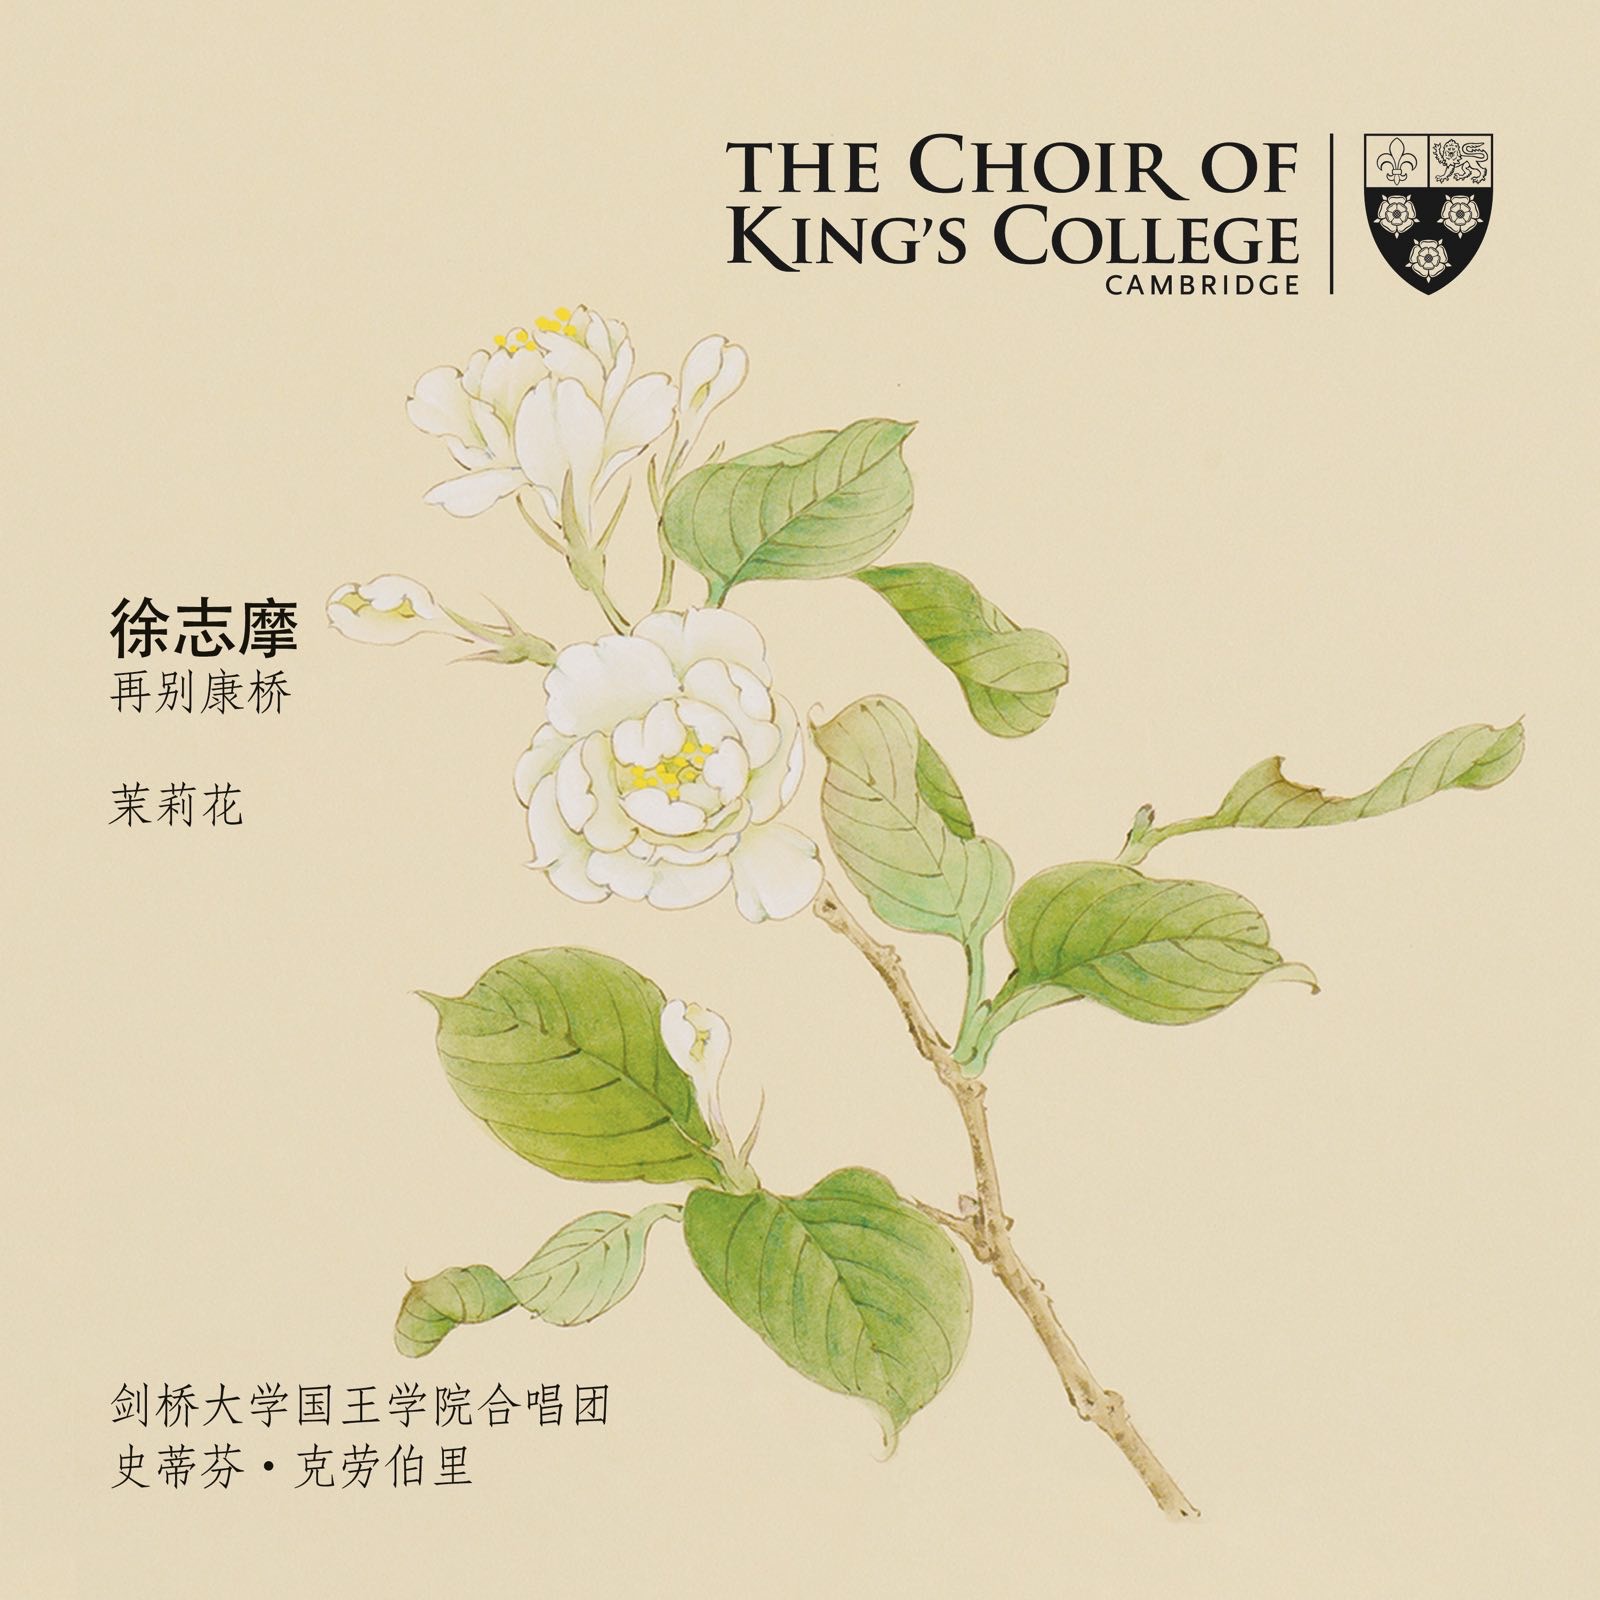 大学国王学院合唱团推出音乐专辑《再别康桥》